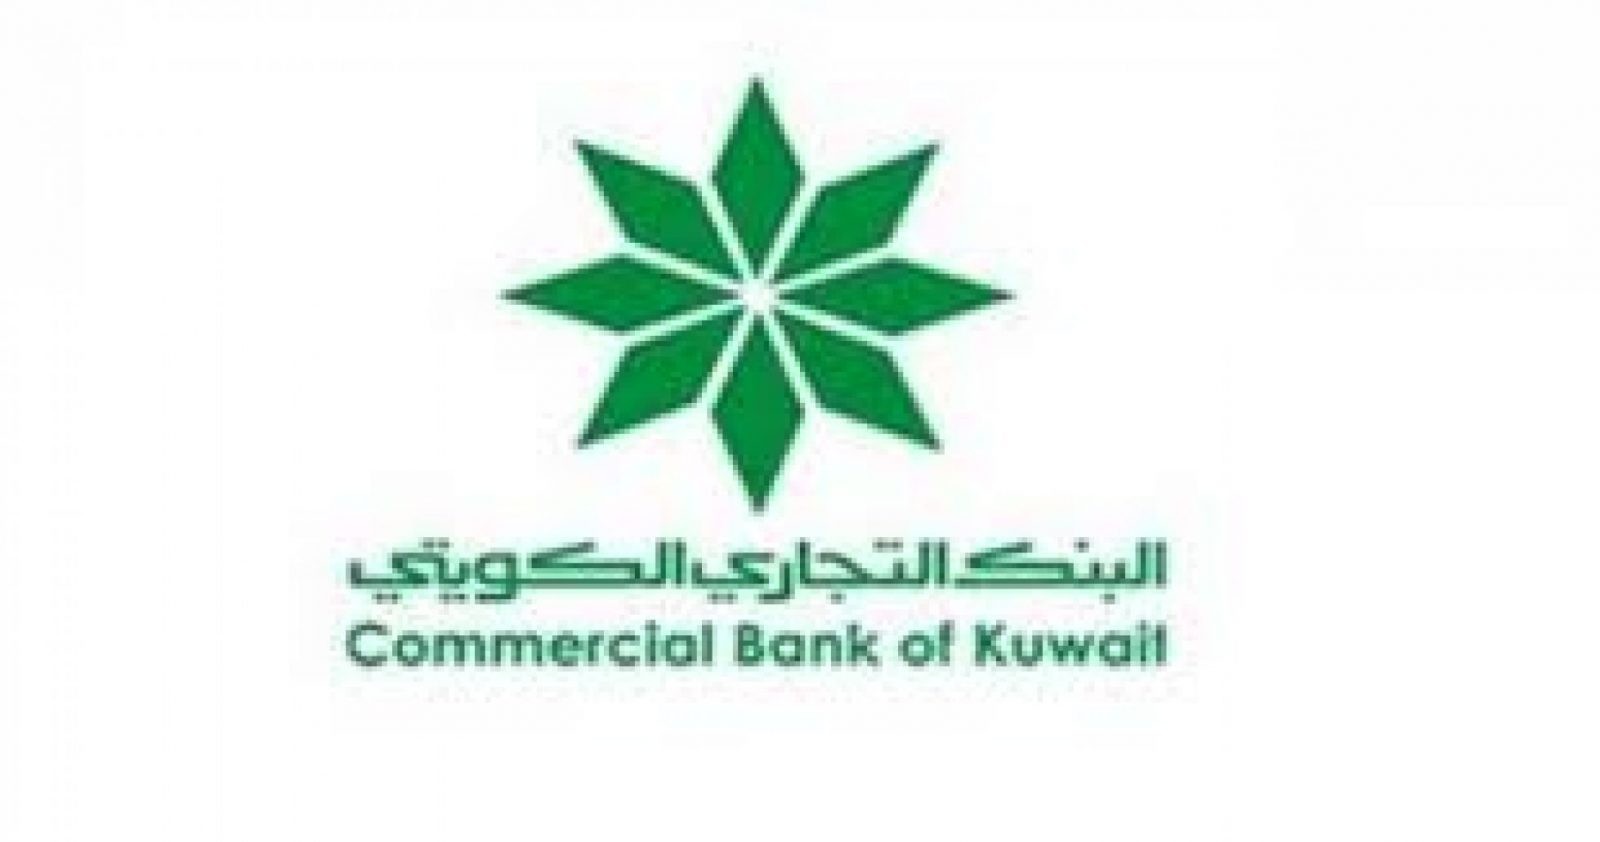 البنك التجاري الكويتي